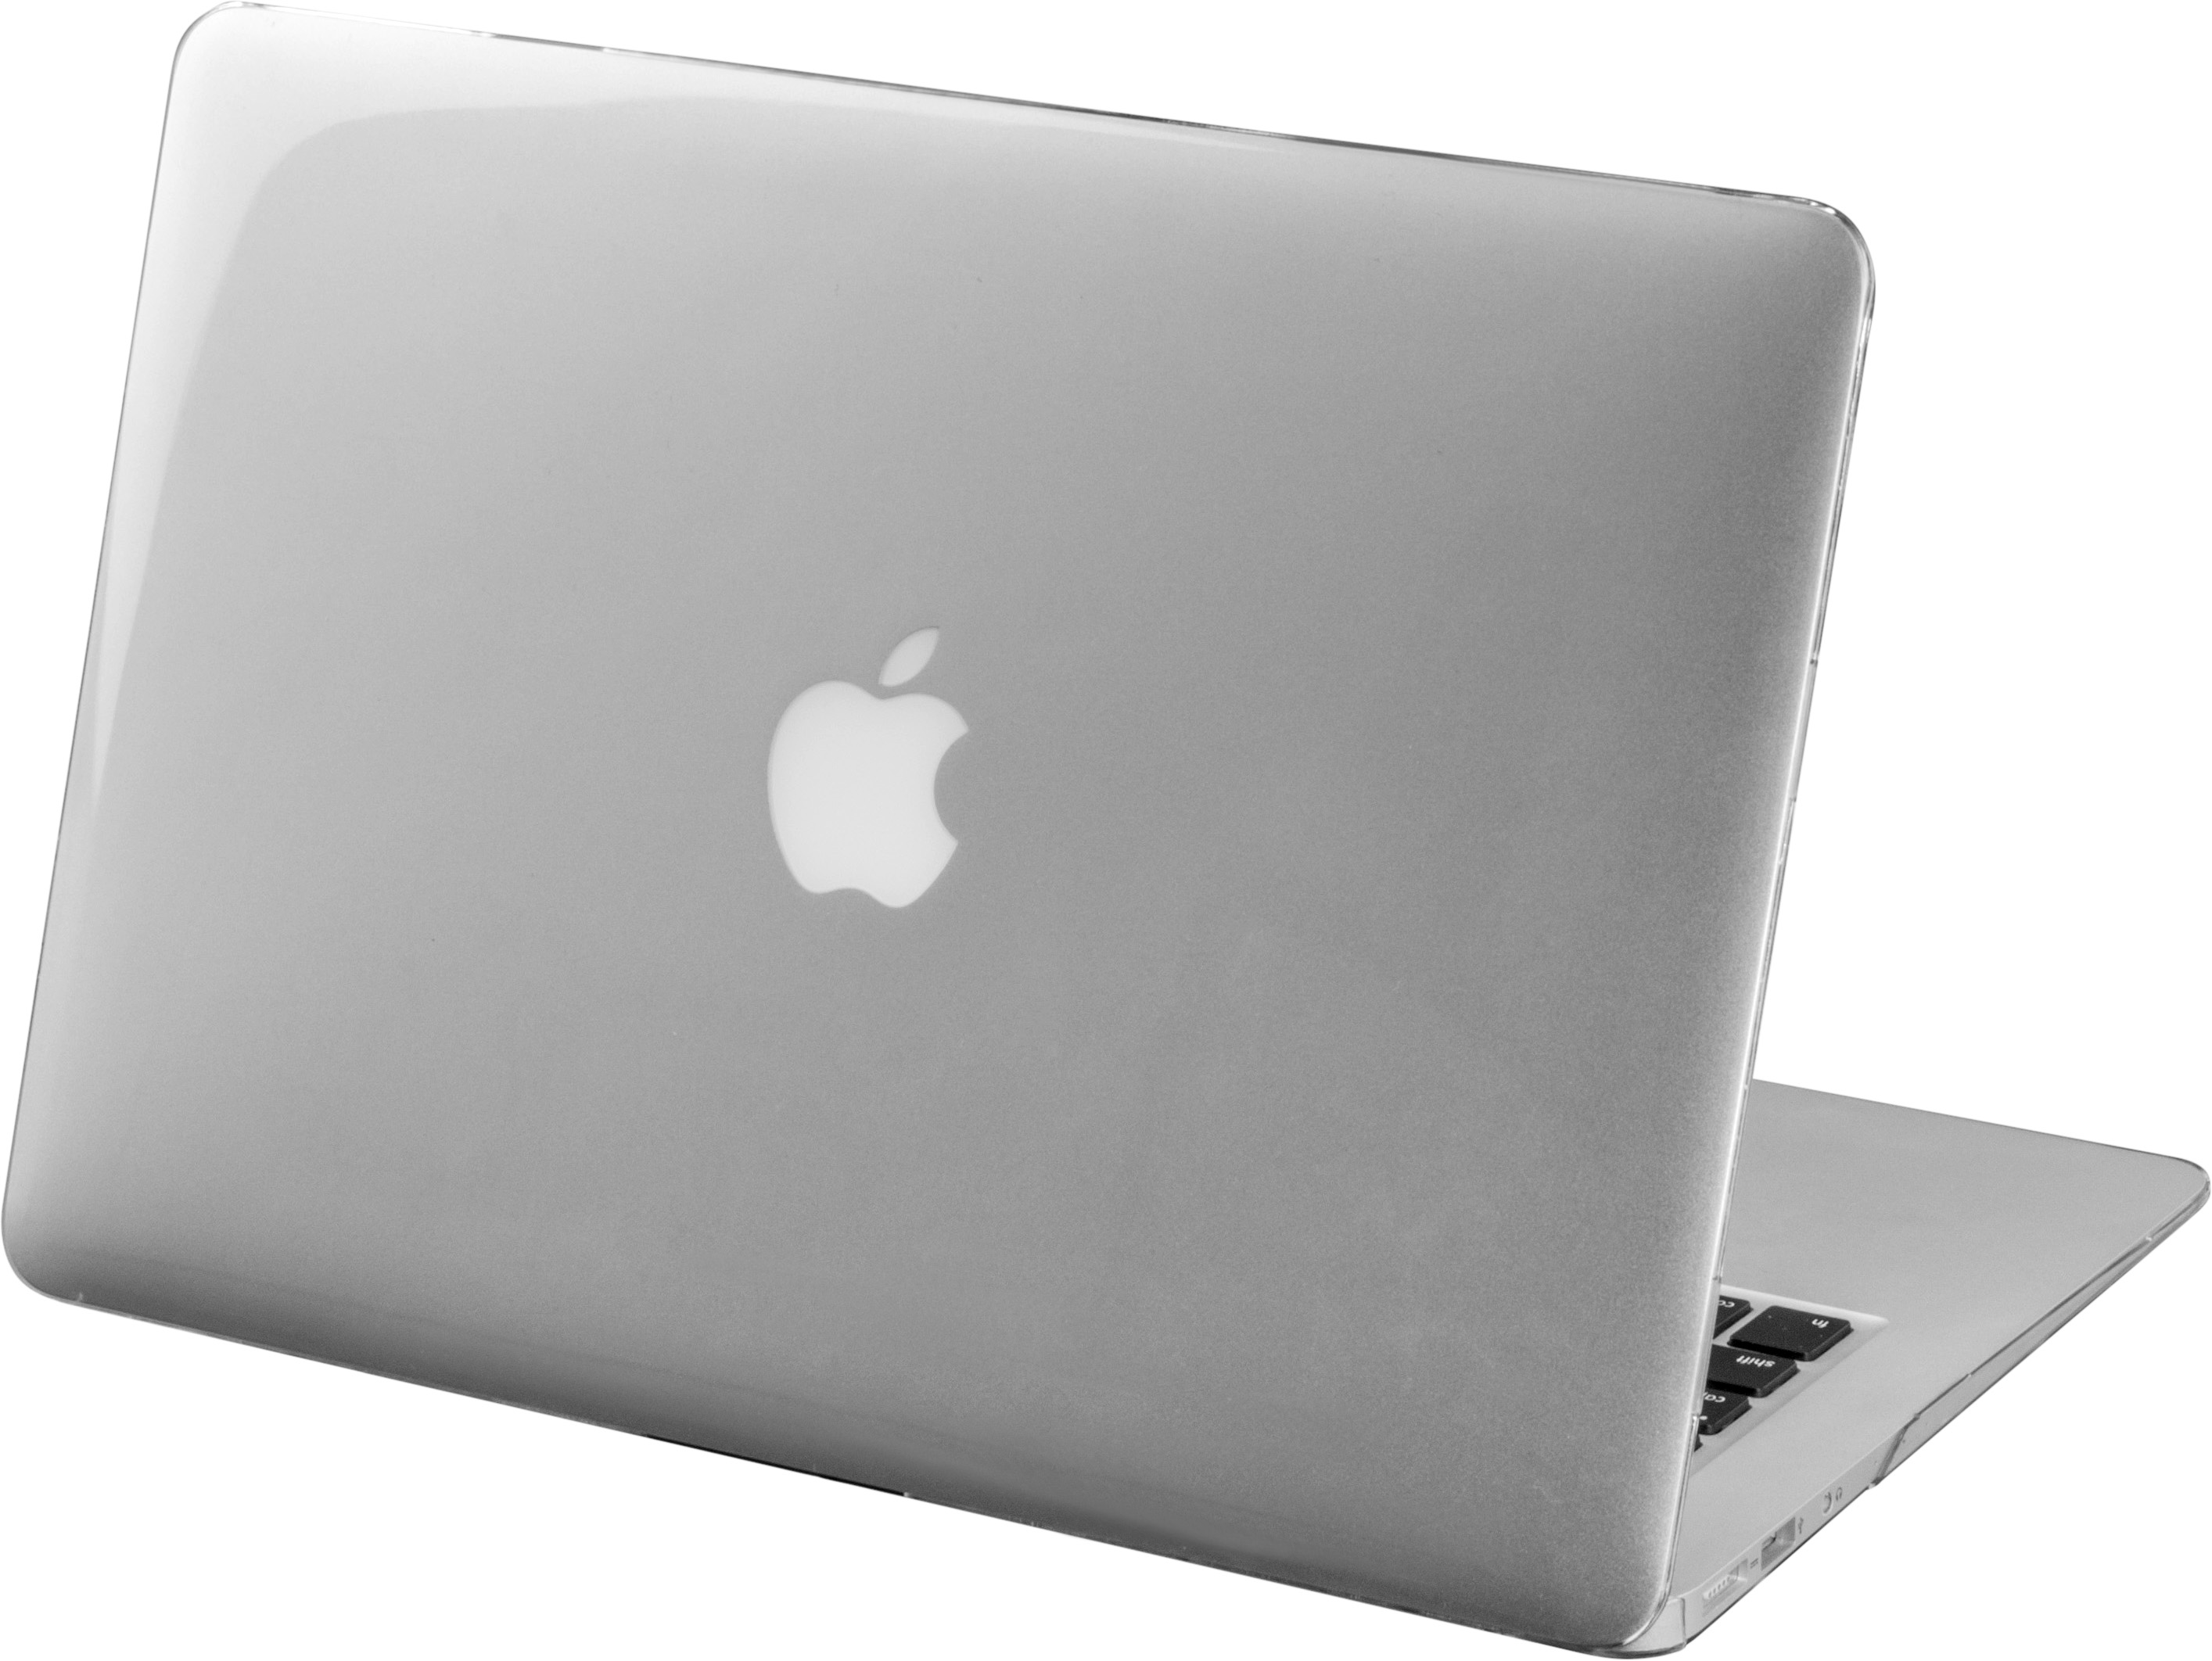 Capa Para Macbook Pro 13 Crystal-x Policarbonato transparente   